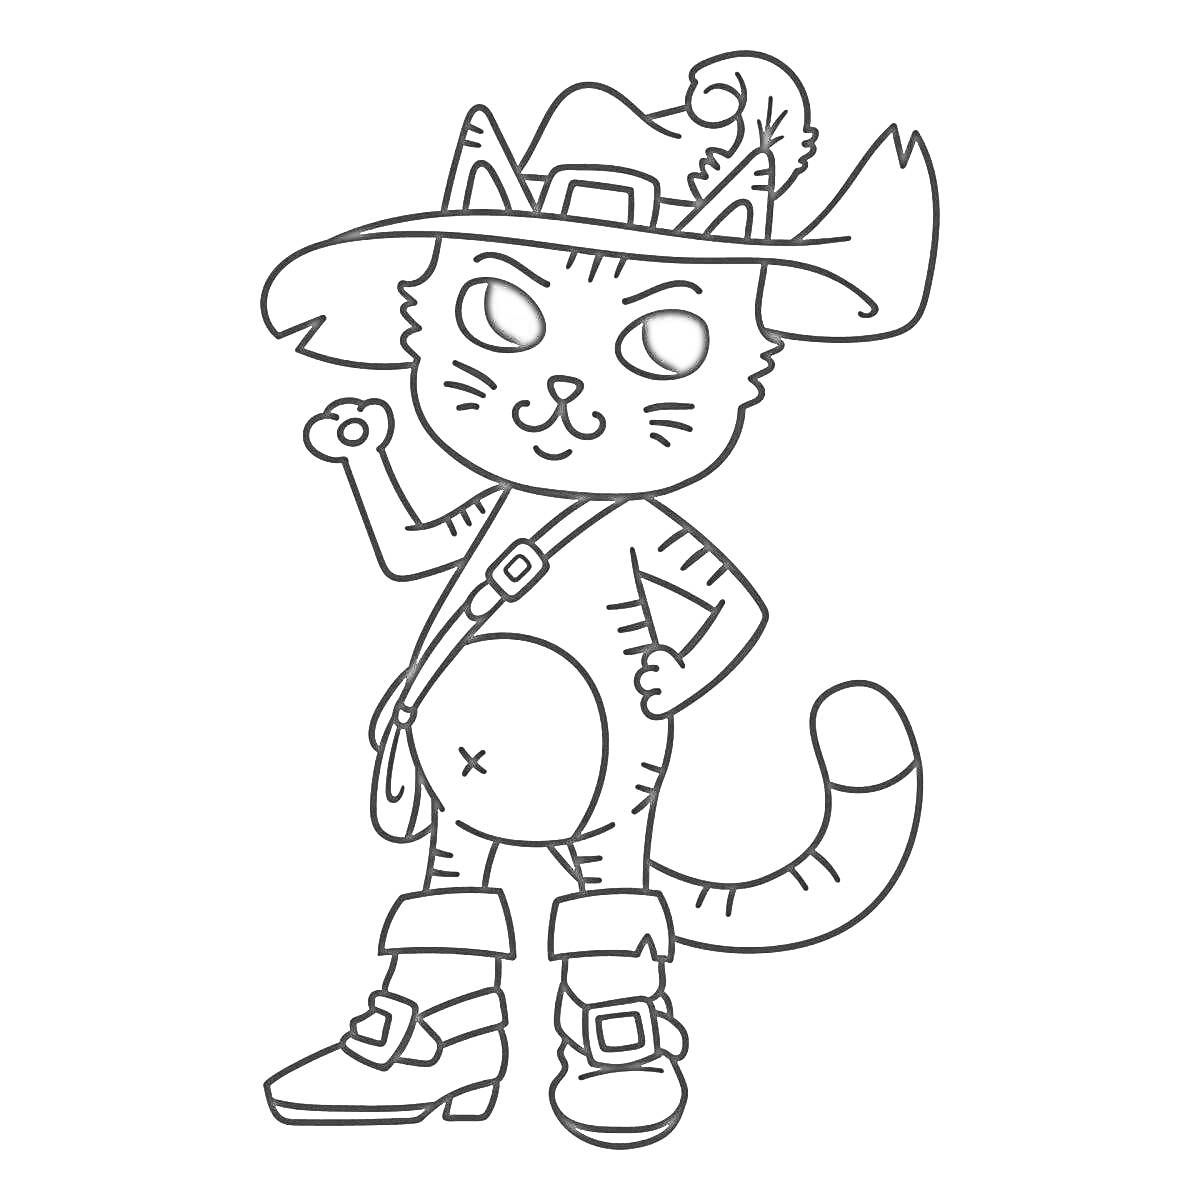 Раскраска Кот в сапогах с шляпой, сапогами, шляпой с пером, поясной сумкой и поднятой лапой